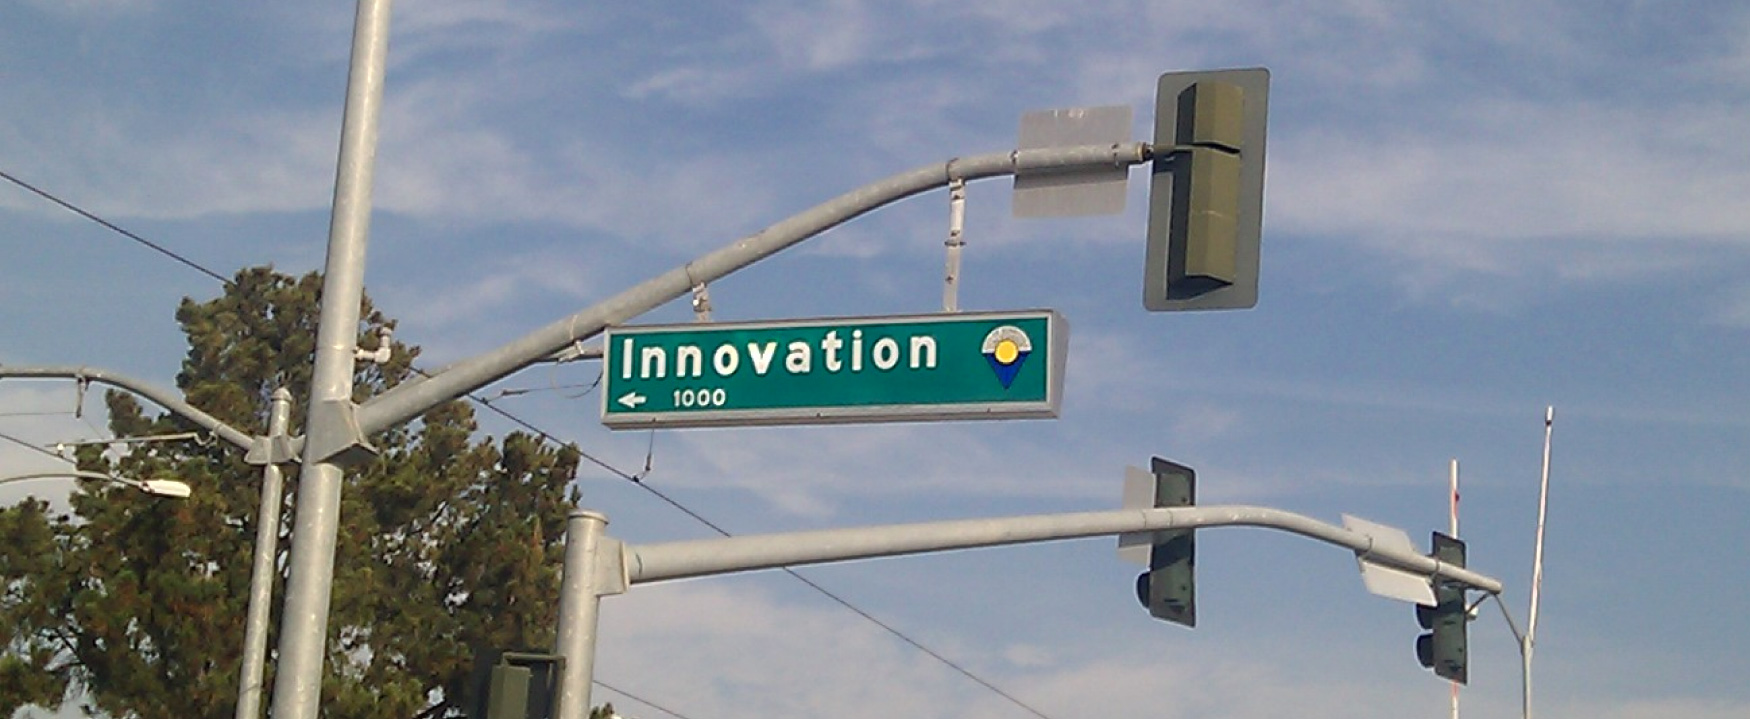 تُظهر الصورة لافتة شارع، ويطلق على الشارع اسم الابتكار